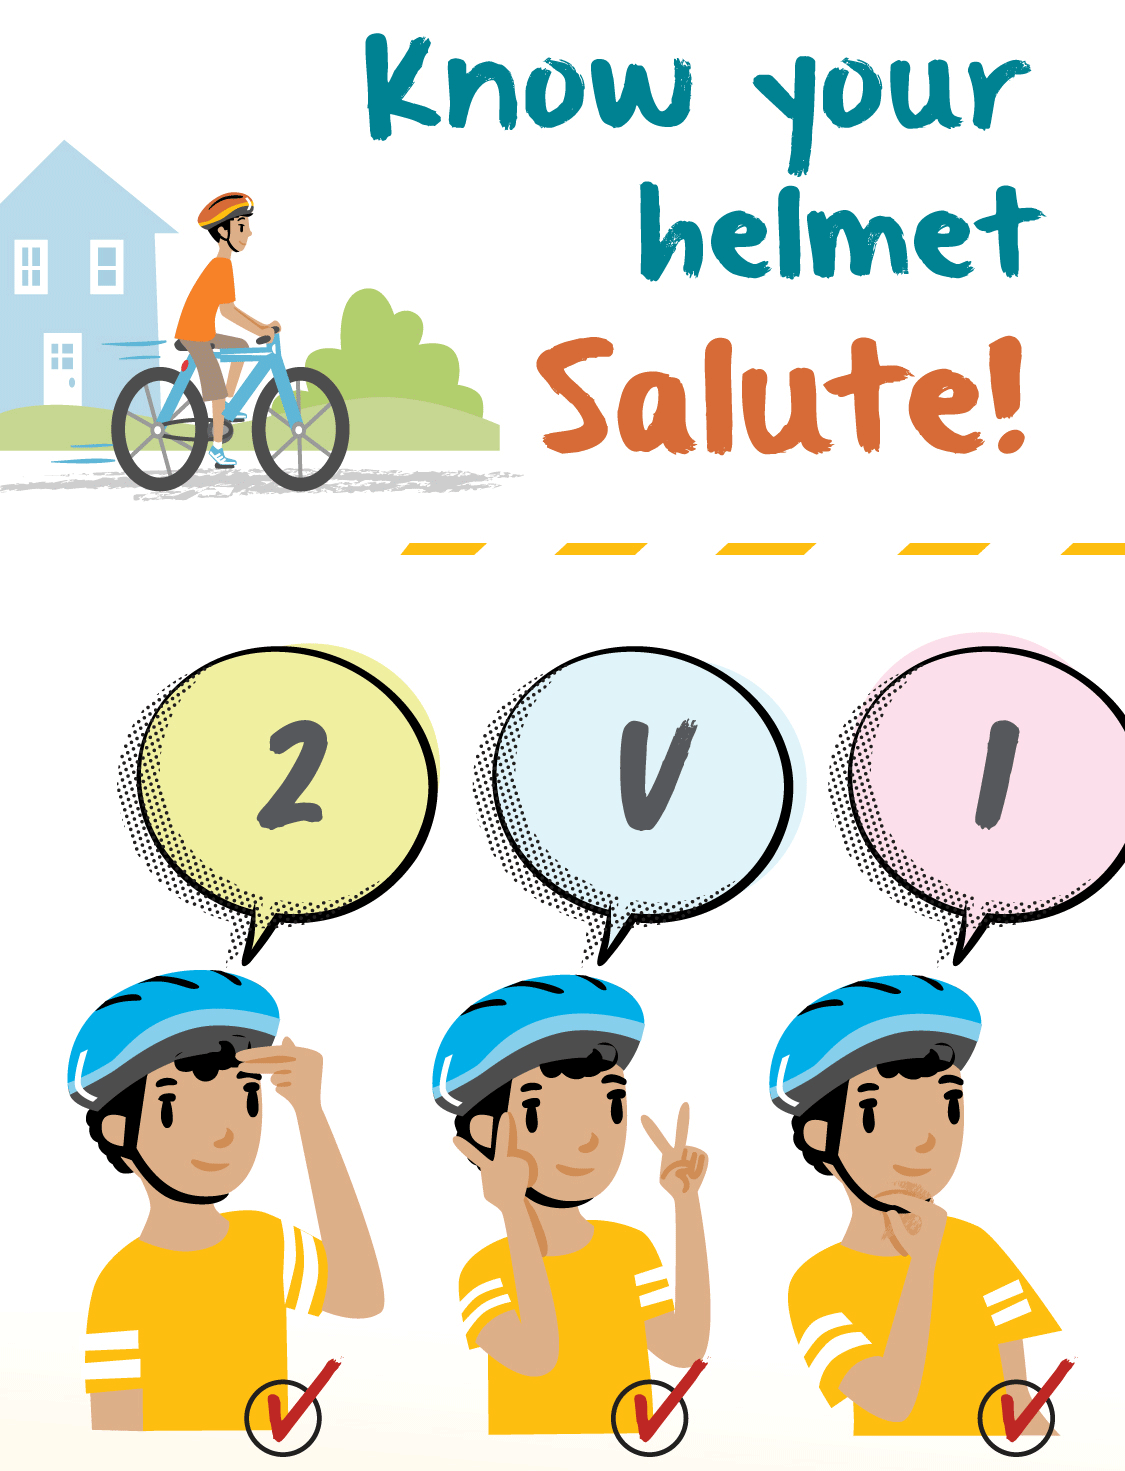 Bicycle helmet safety